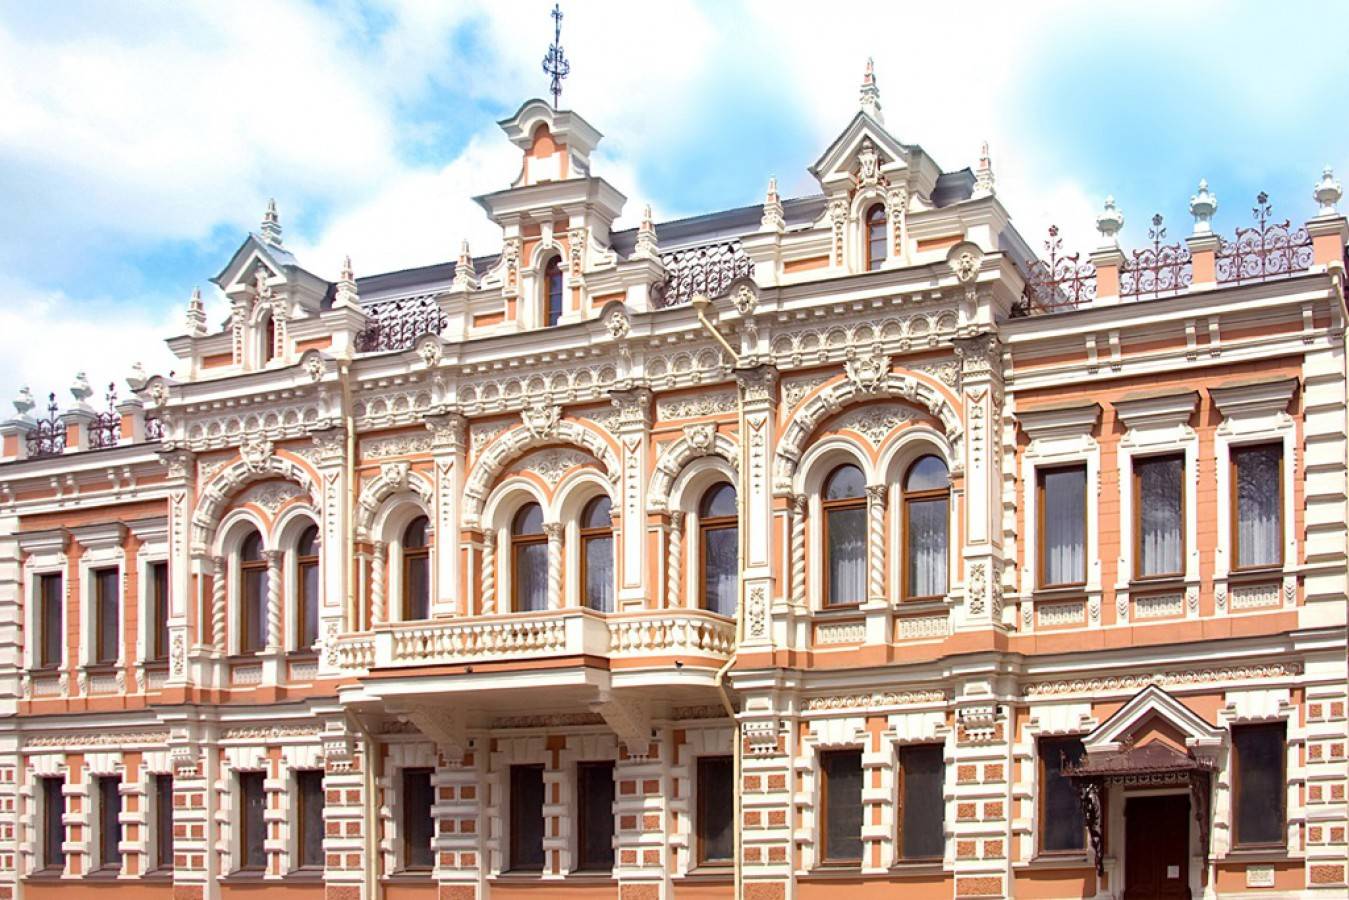 Музей имени е.д. фелицына в краснодаре: адрес, фото, экспозиции, отзывы